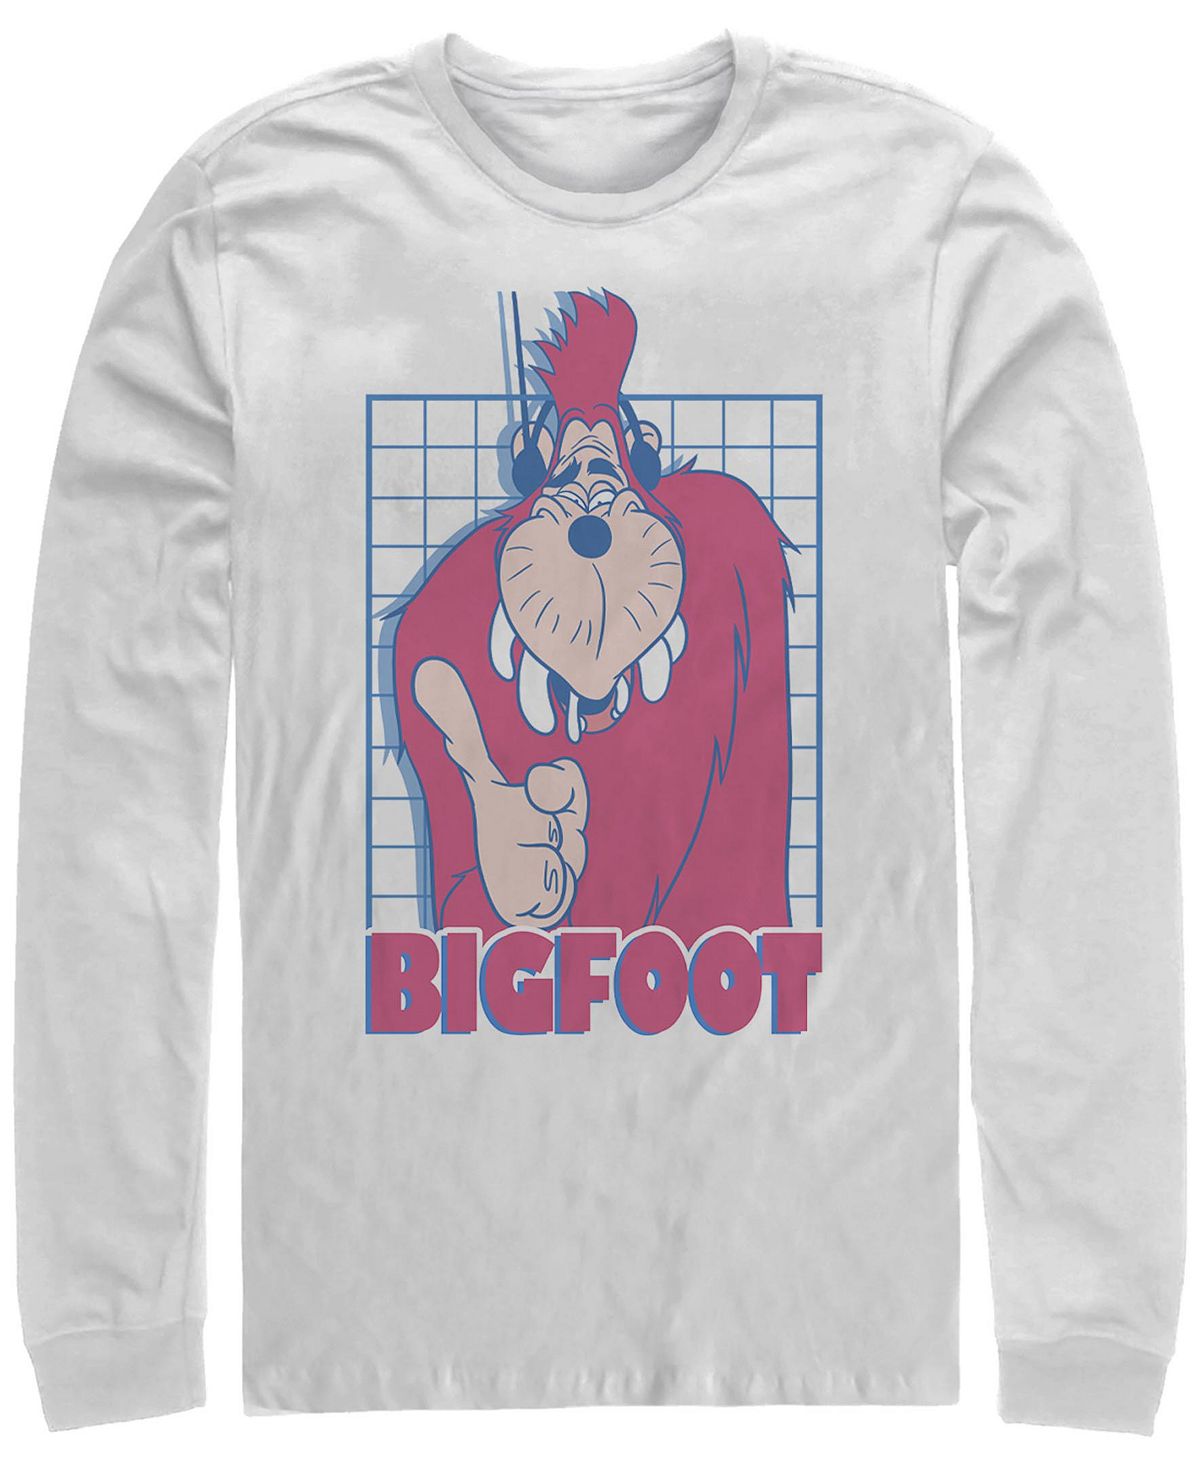 Мужская футболка с круглым вырезом и длинными рукавами a goofy movie jamming bigfoot Fifth Sun, белый